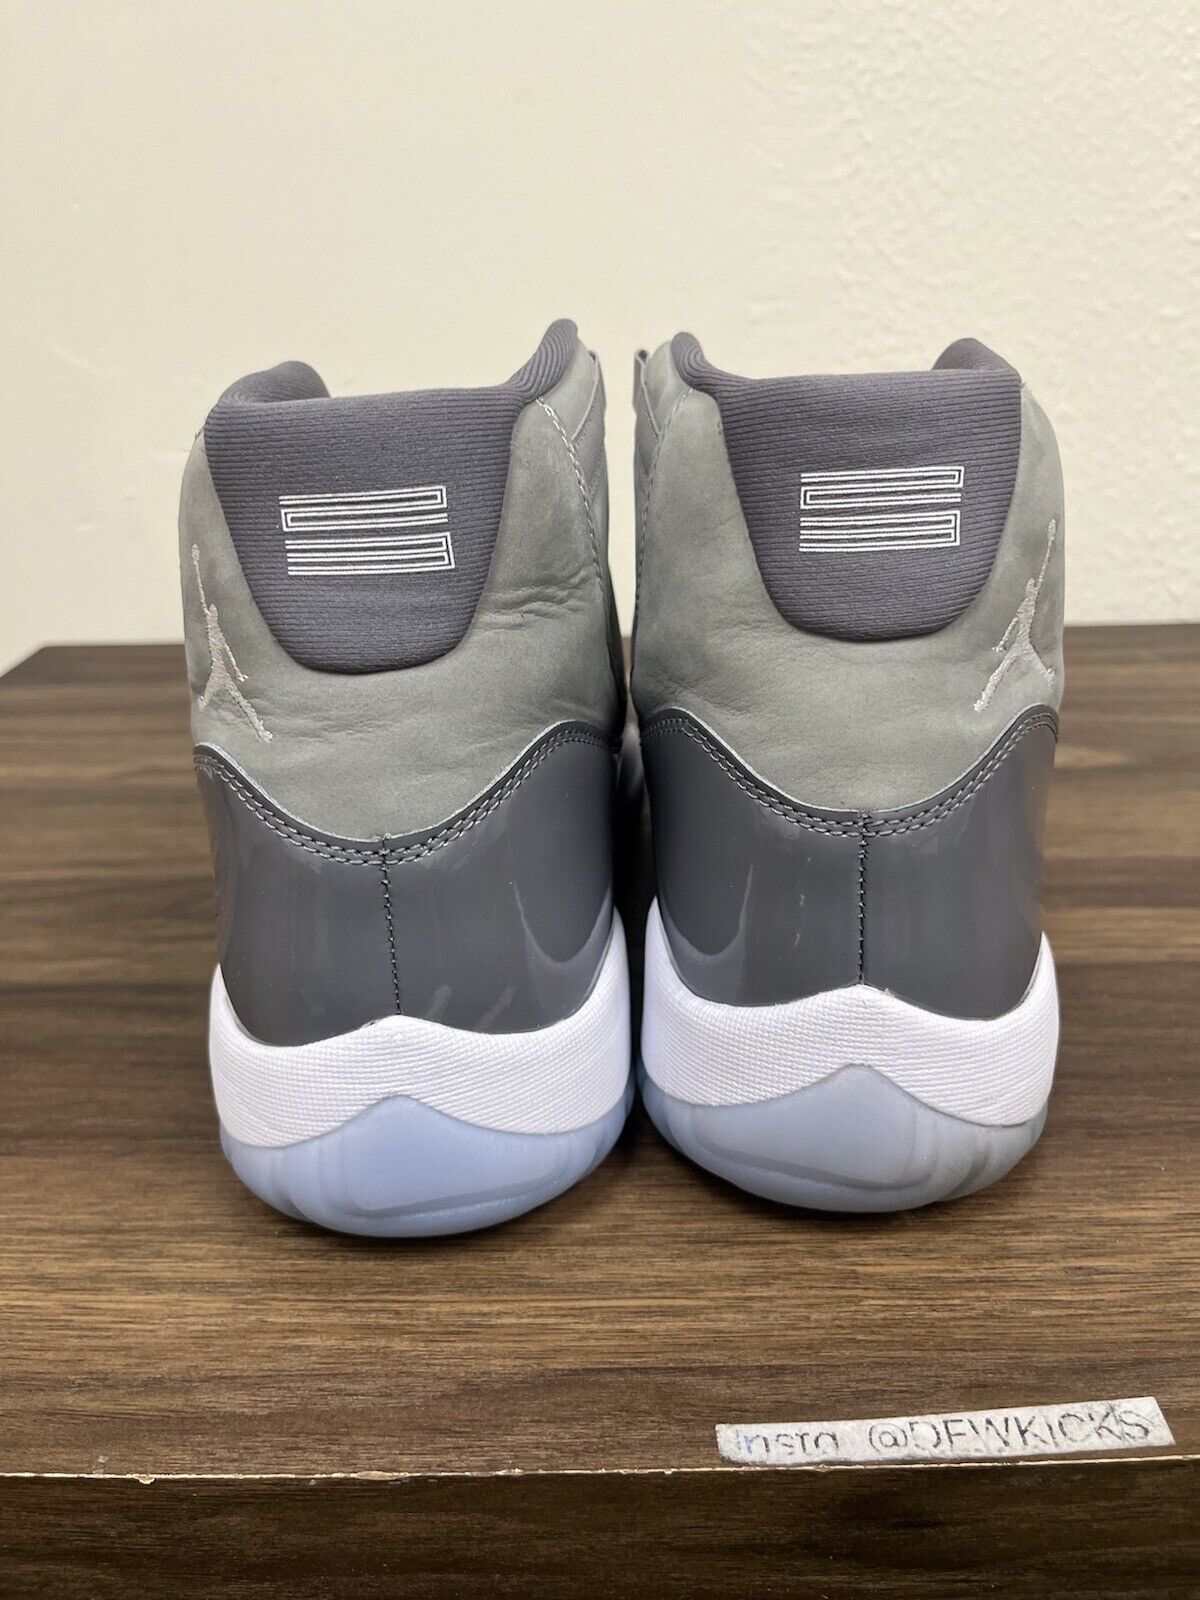 Size 13 - Air Jordan 11 Retro High Cool Grey 2021 CT8012-005 VNDS Mens Sneakers